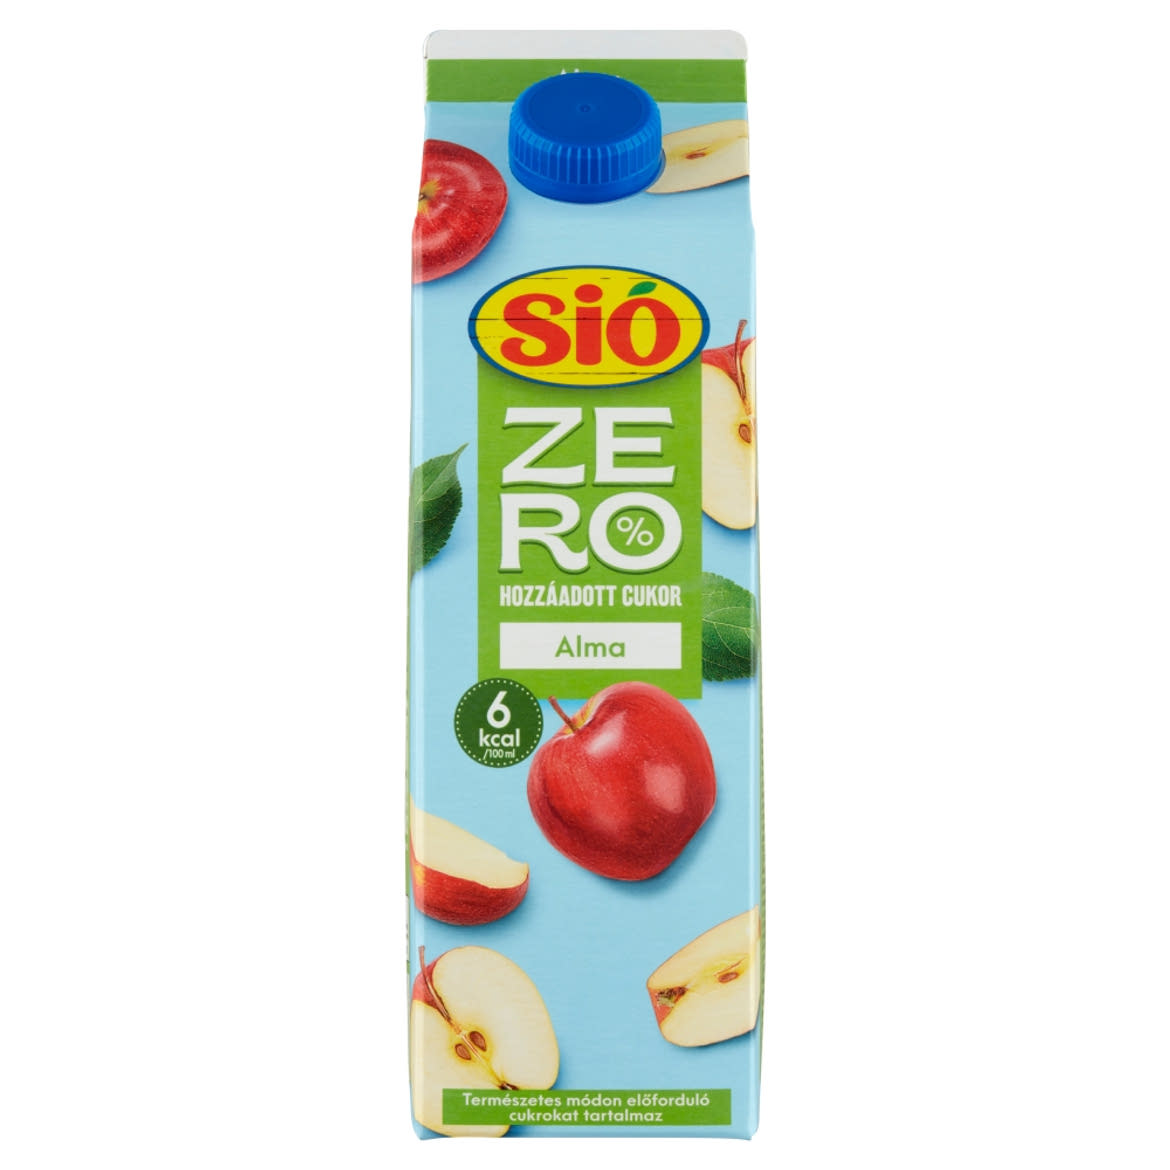 Sió Zero édesítőszerekkel készült szűrt alma gyümölcsital